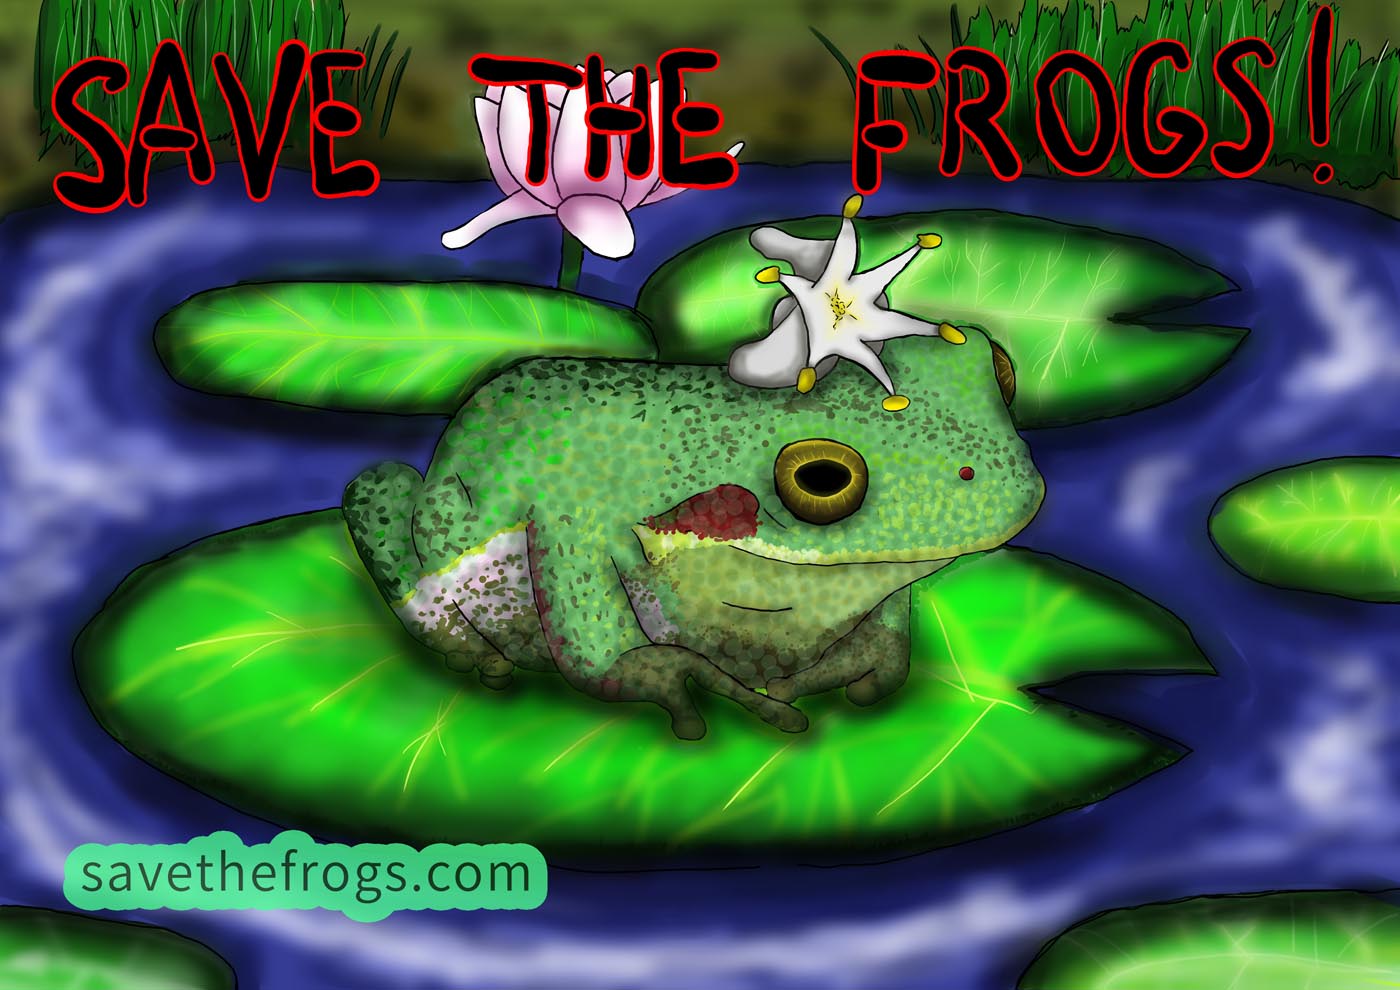 Diana-Novokreshina-Rússia-2021-save-the-frogs-art-contest Vencedor do 5º lugar